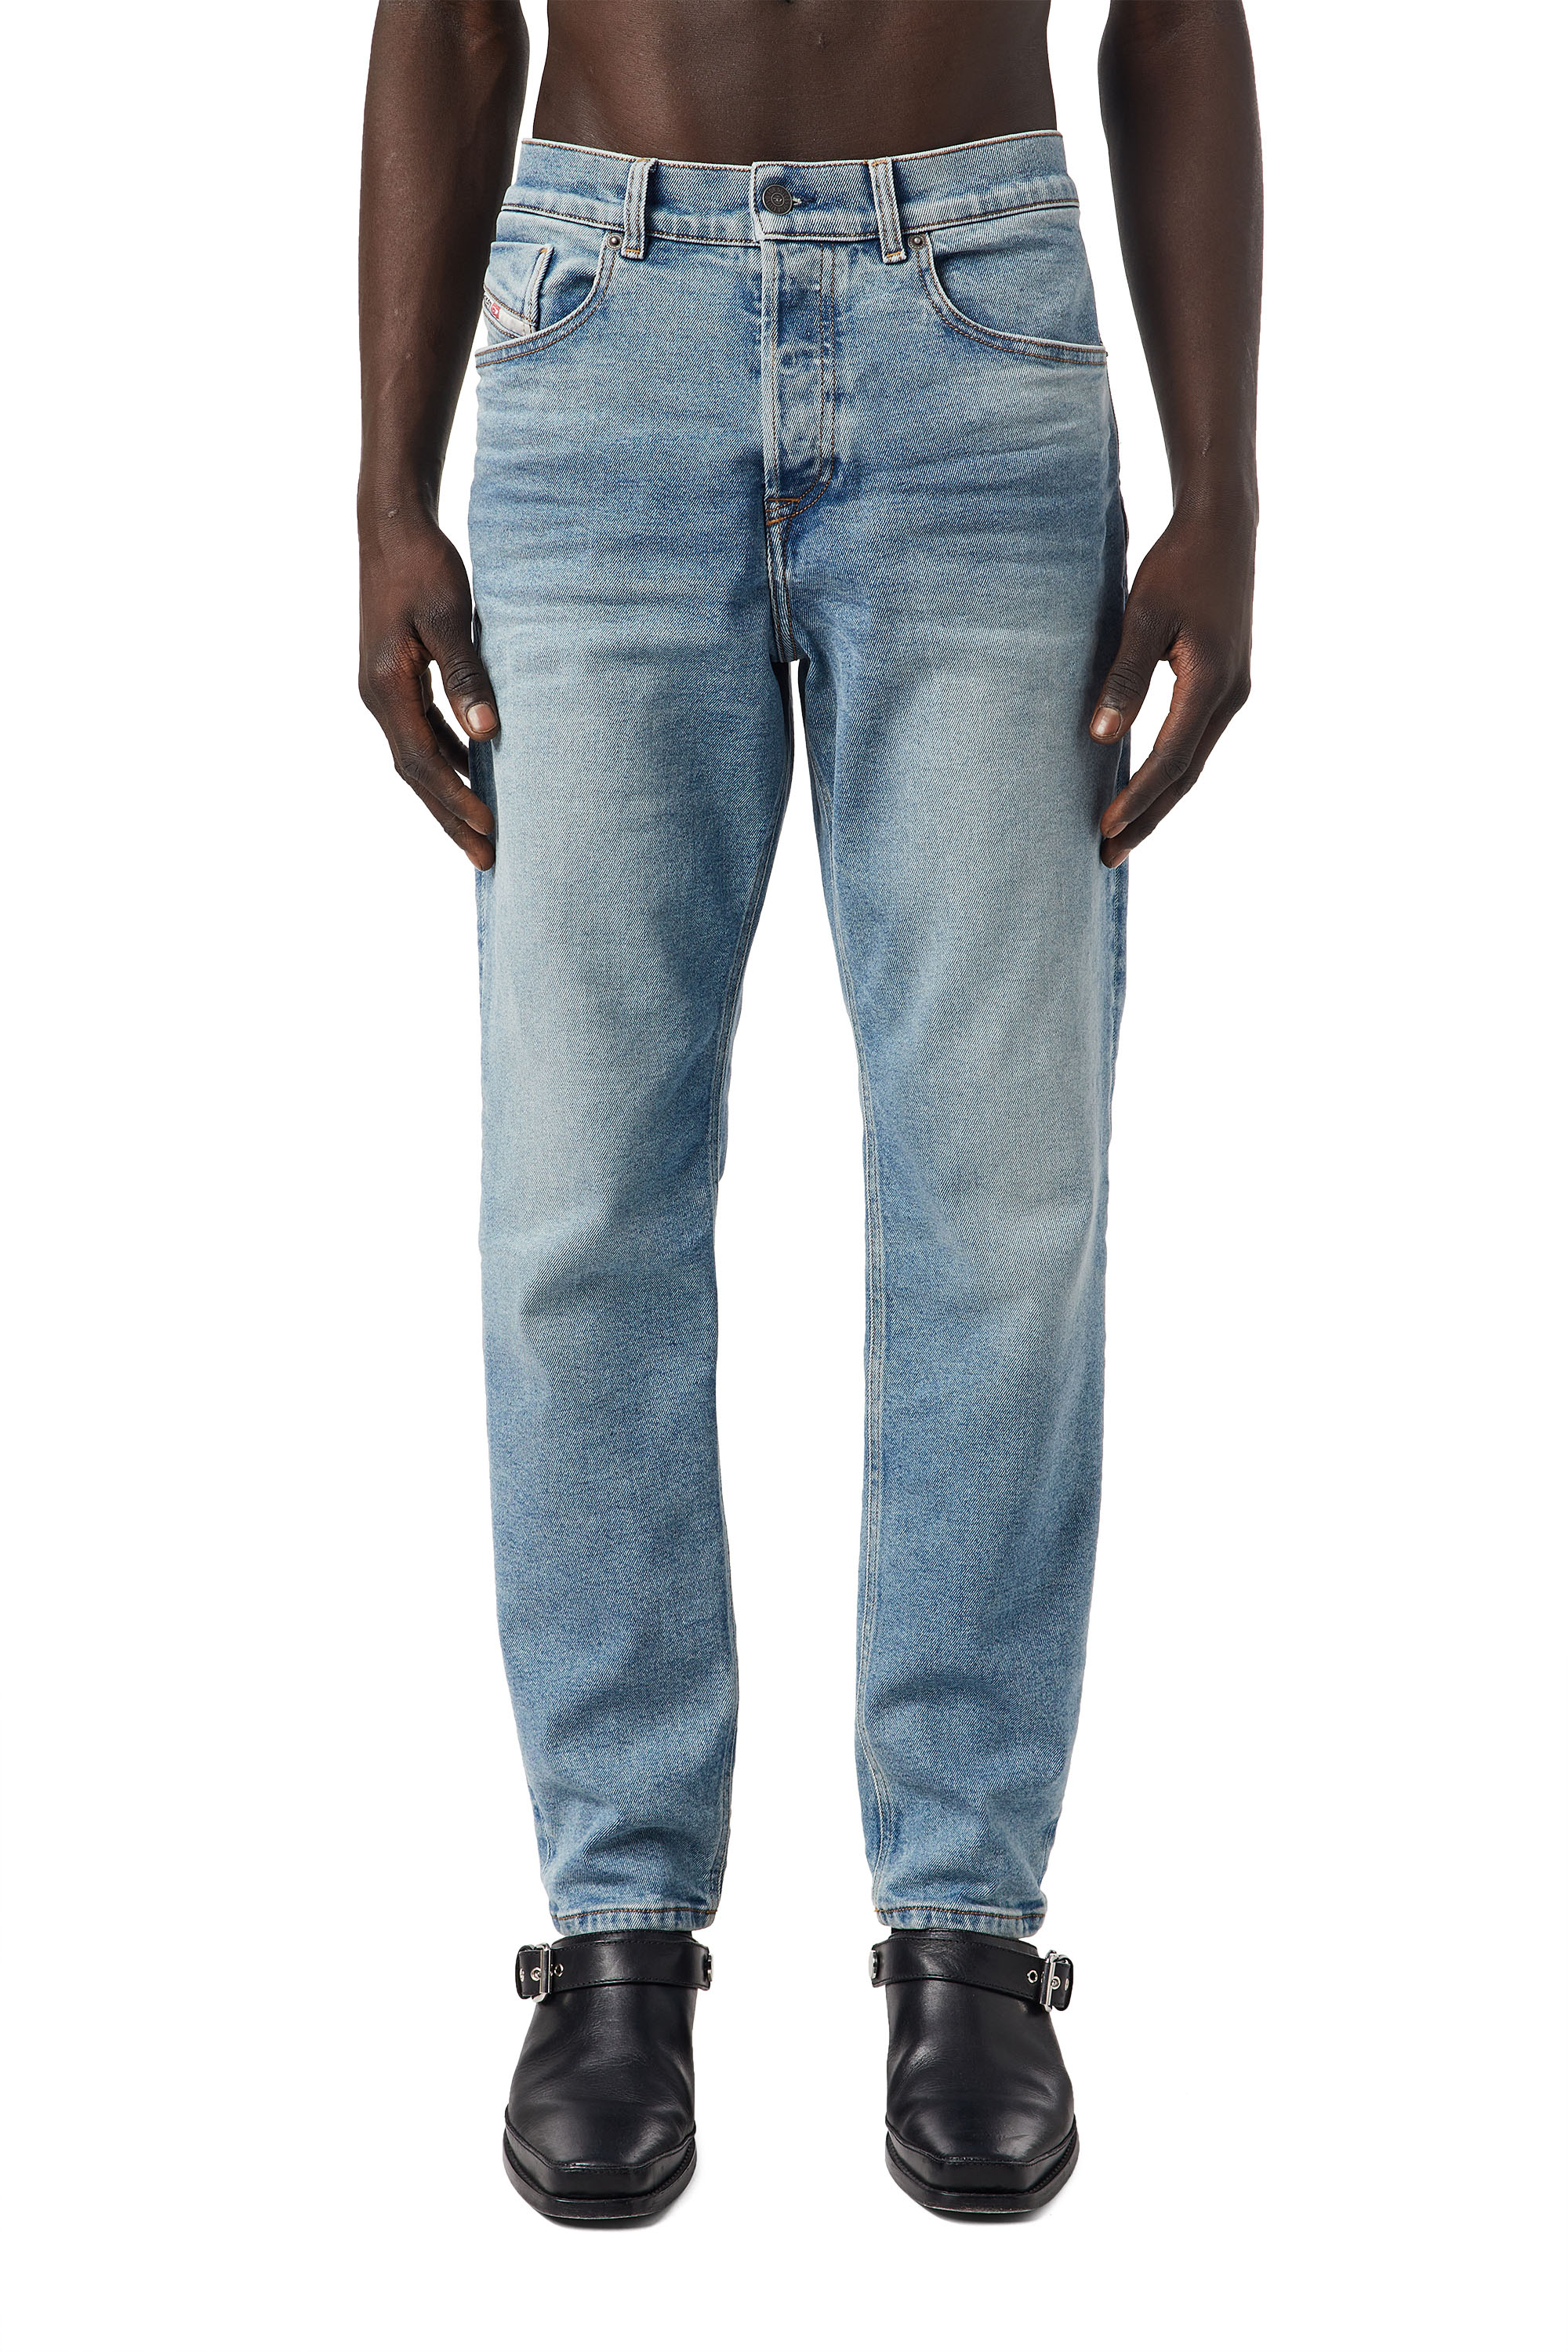 Jeans hellblau herren - Die qualitativsten Jeans hellblau herren im Vergleich